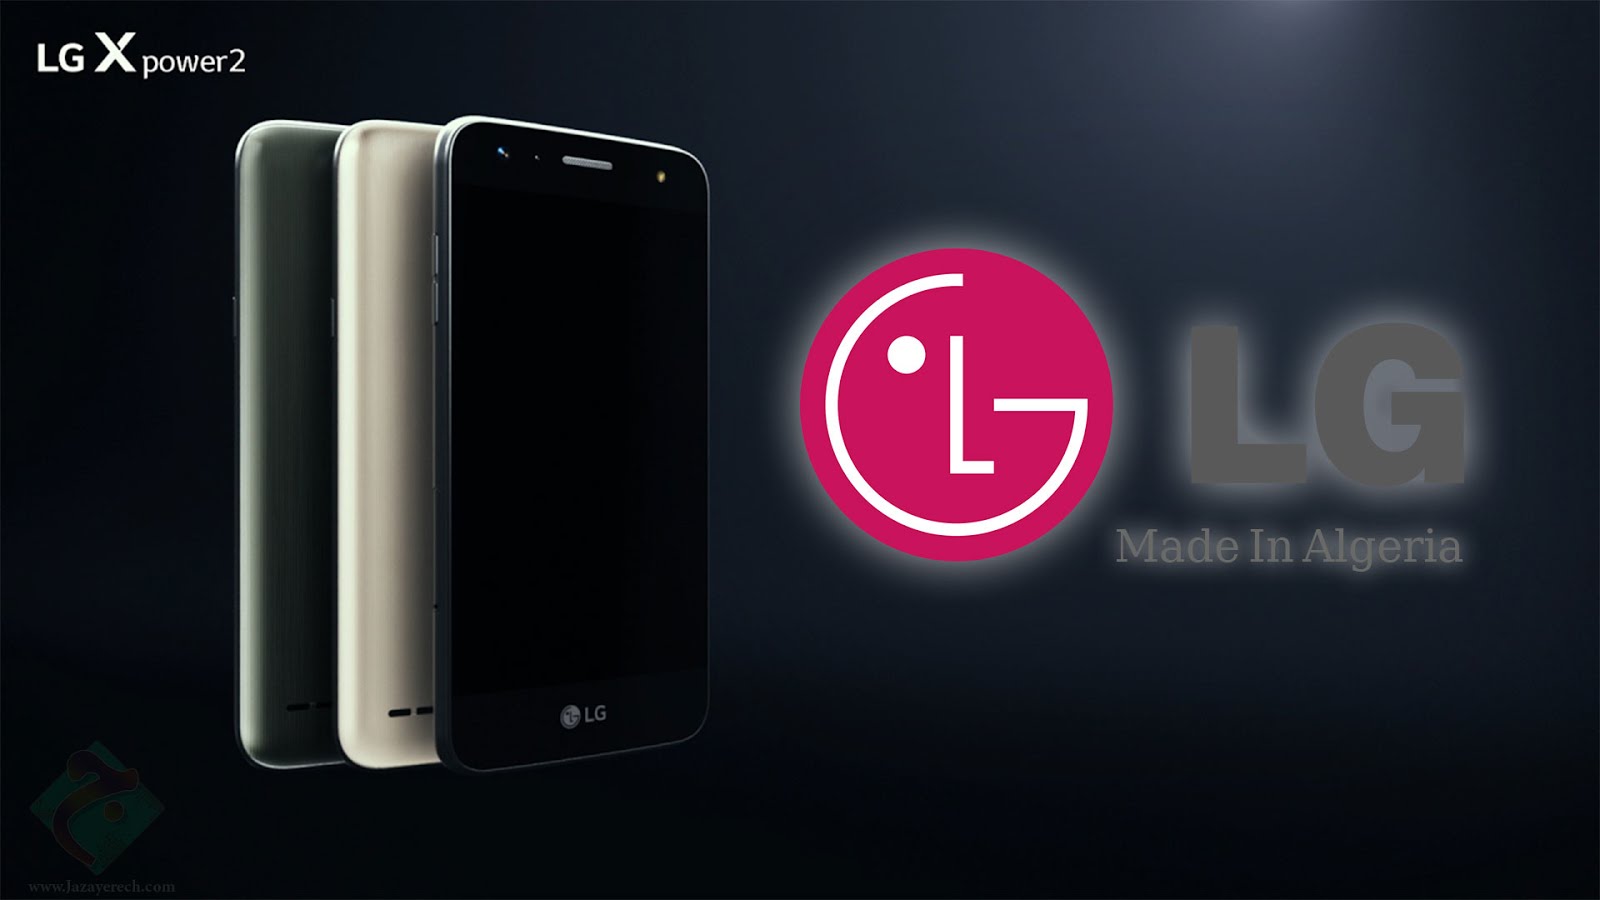 أخيراً شركة LG توفر هاتف LG XPower 2 المصنع محلياً في الأسواق